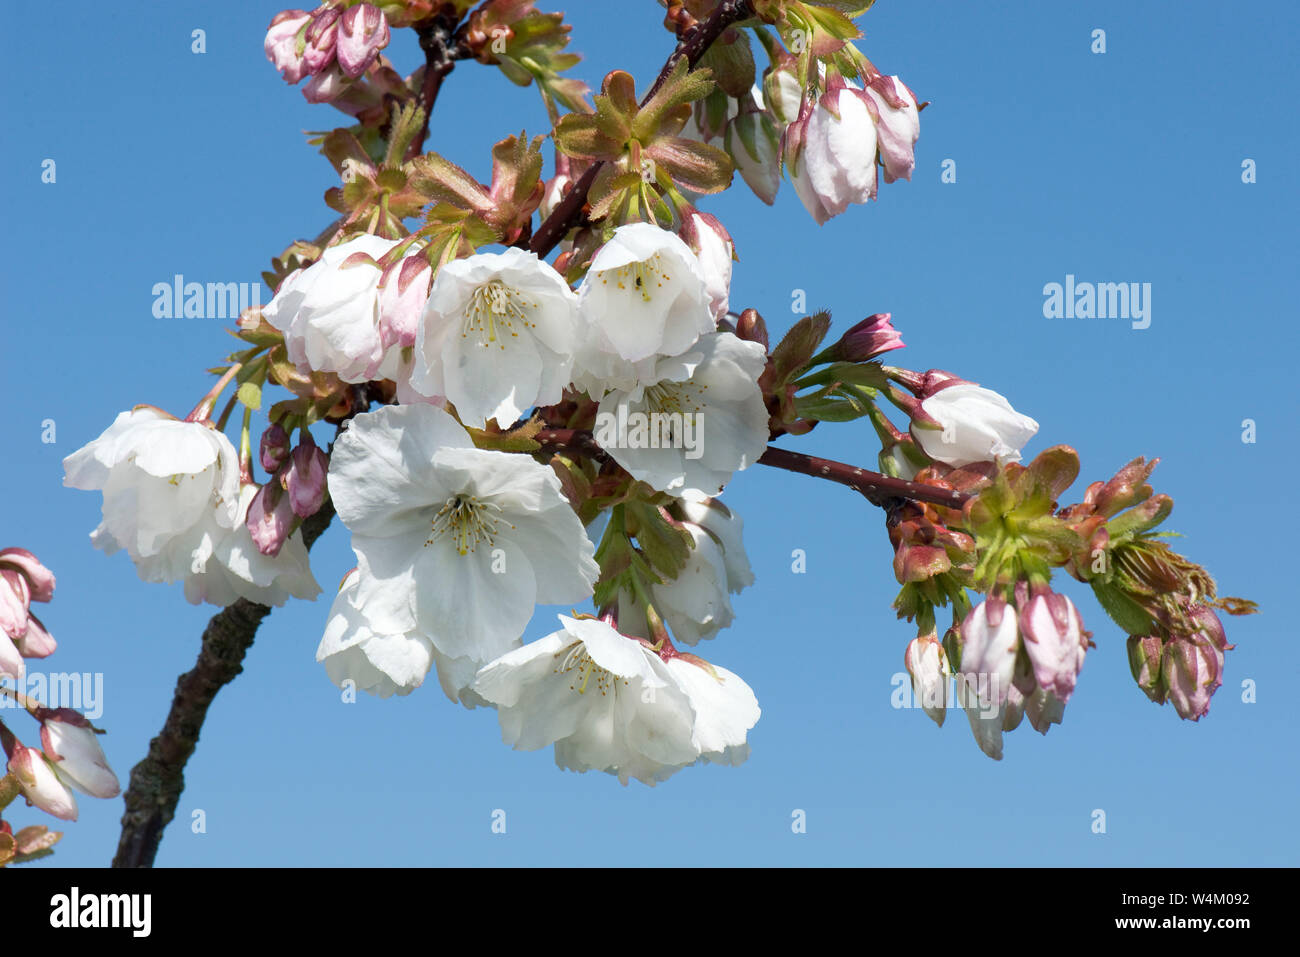 Weiße Blumen Eröffnung gegen den blauen Himmel an einem blühenden Kirschbaum Prunus serrulata Tai Haku' oder 'großen weißen Kirschbaum, Berkshire, März Stockfoto